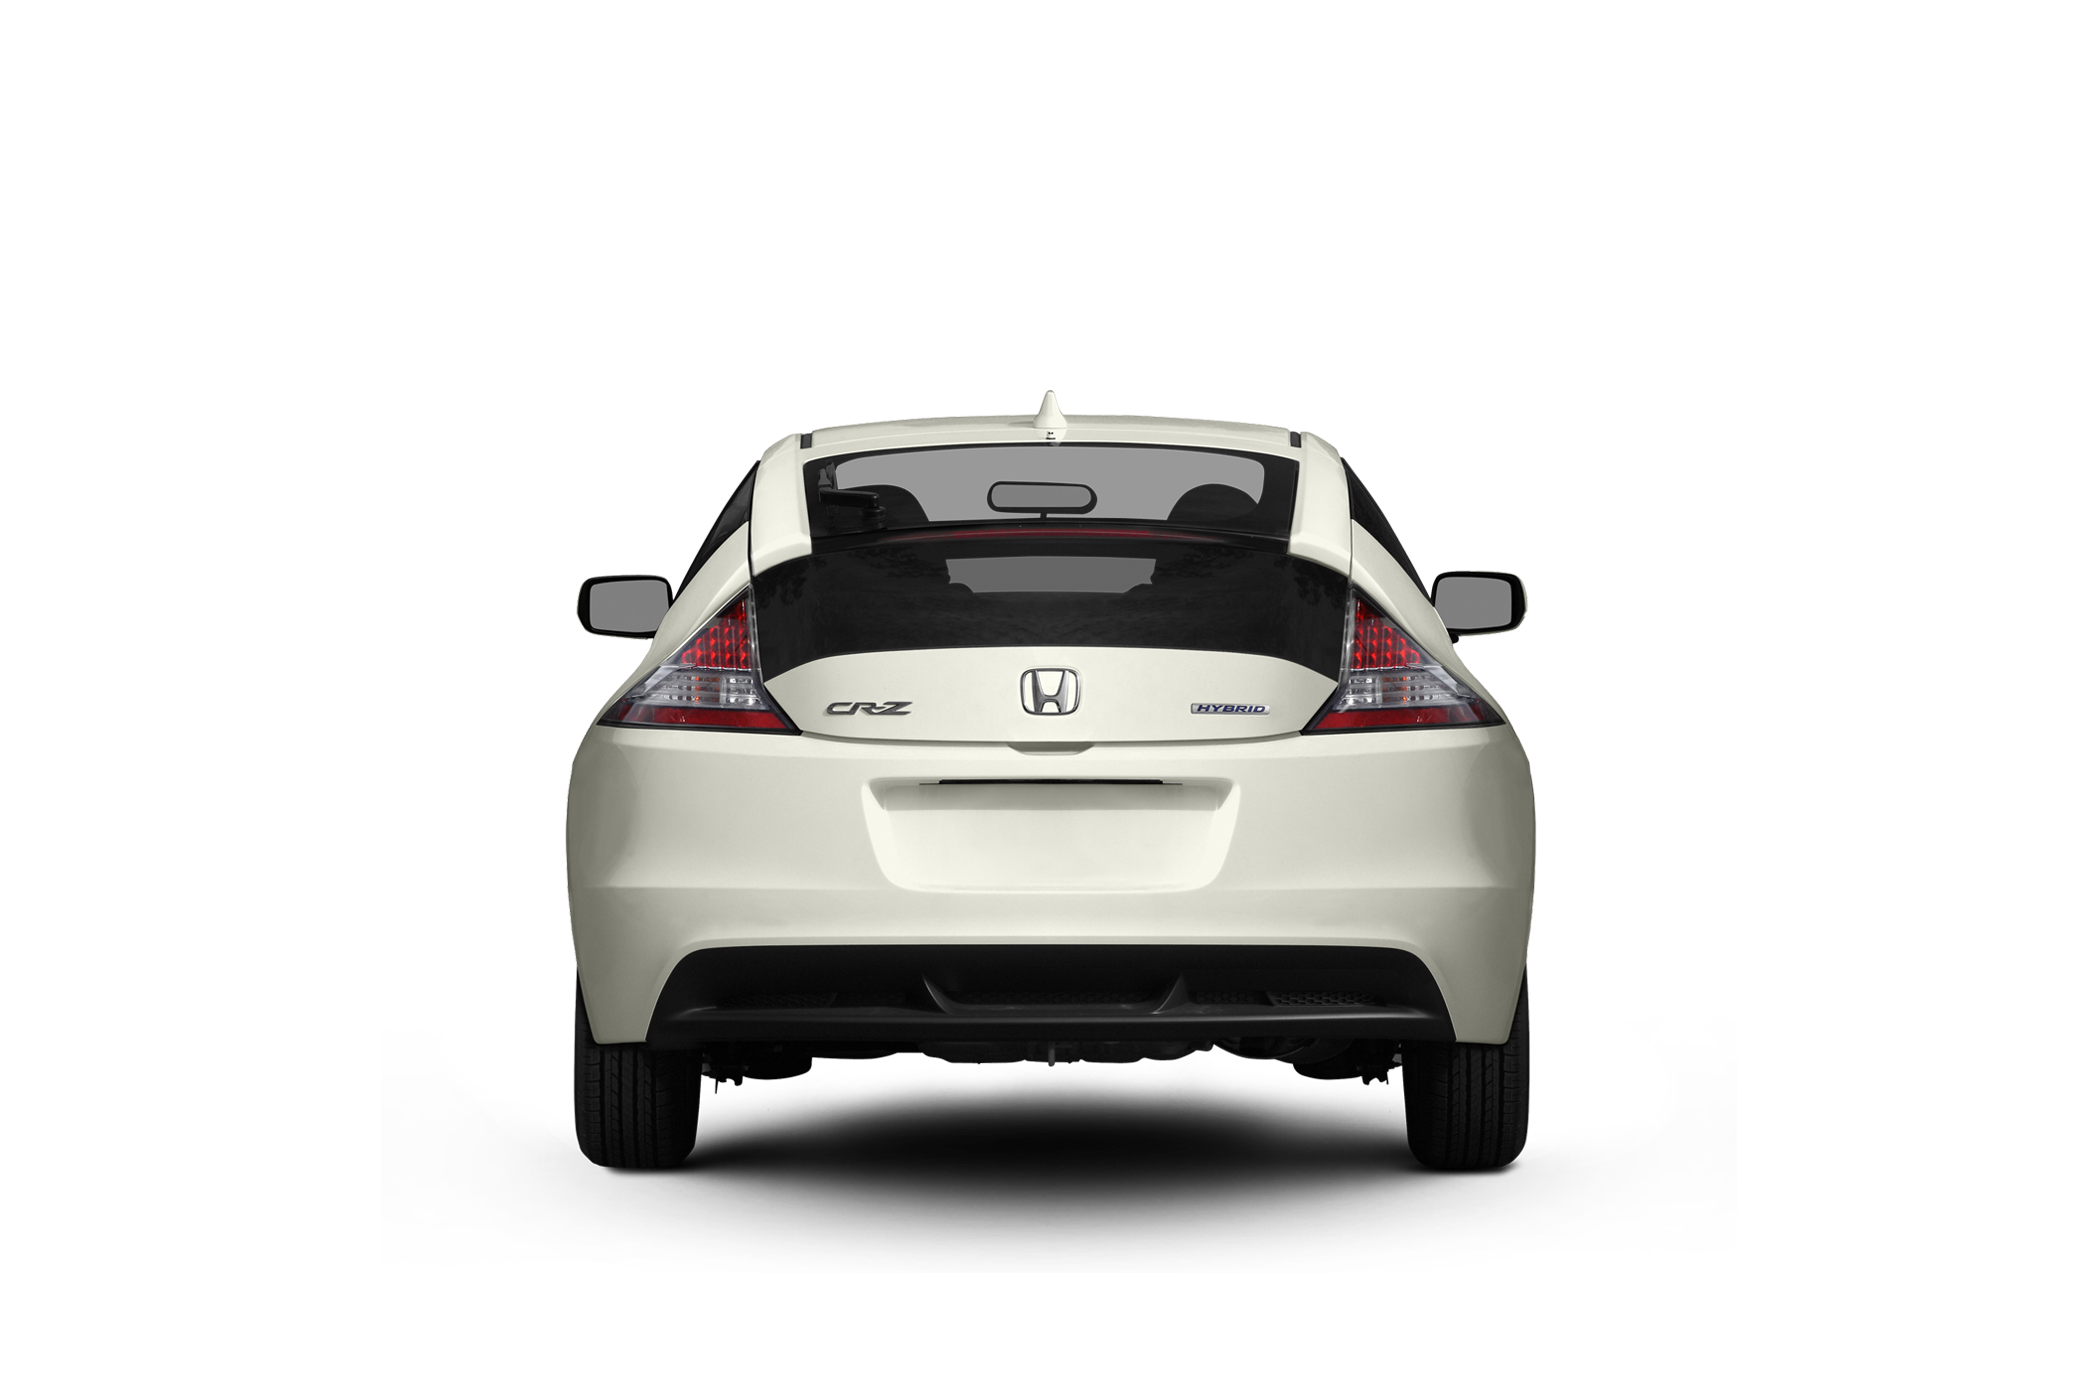 2011 Honda CR-Z EX Nav Hybrid Hatchback